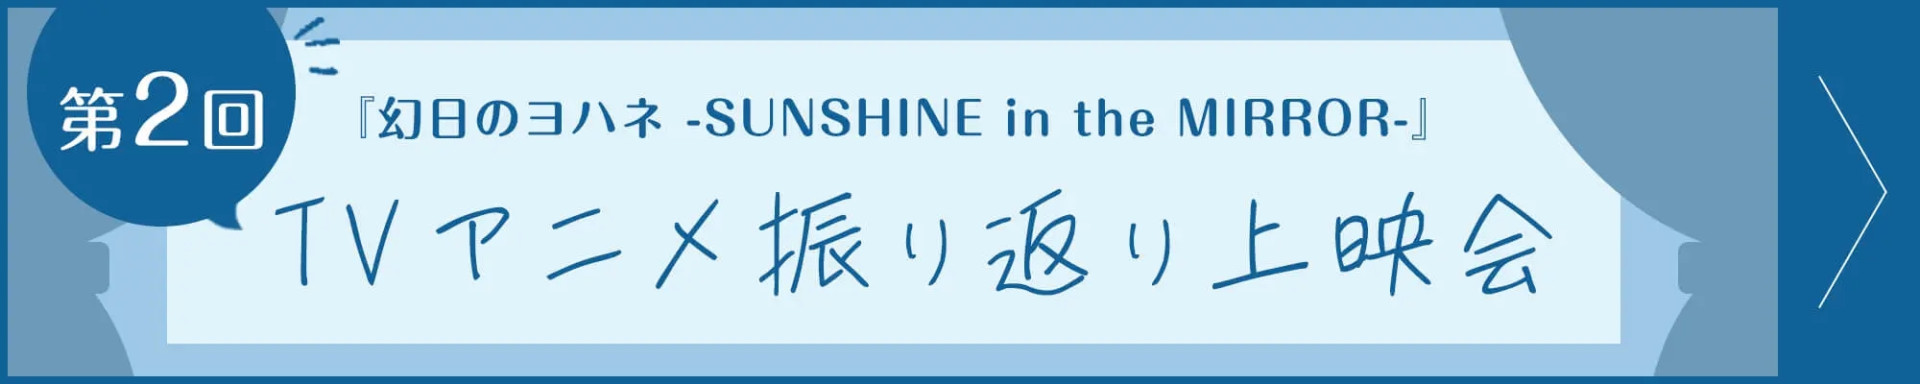 第2回『幻日のヨハネ -SUNSHINE in the MIRROR-』TVアニメ振り返り上映会